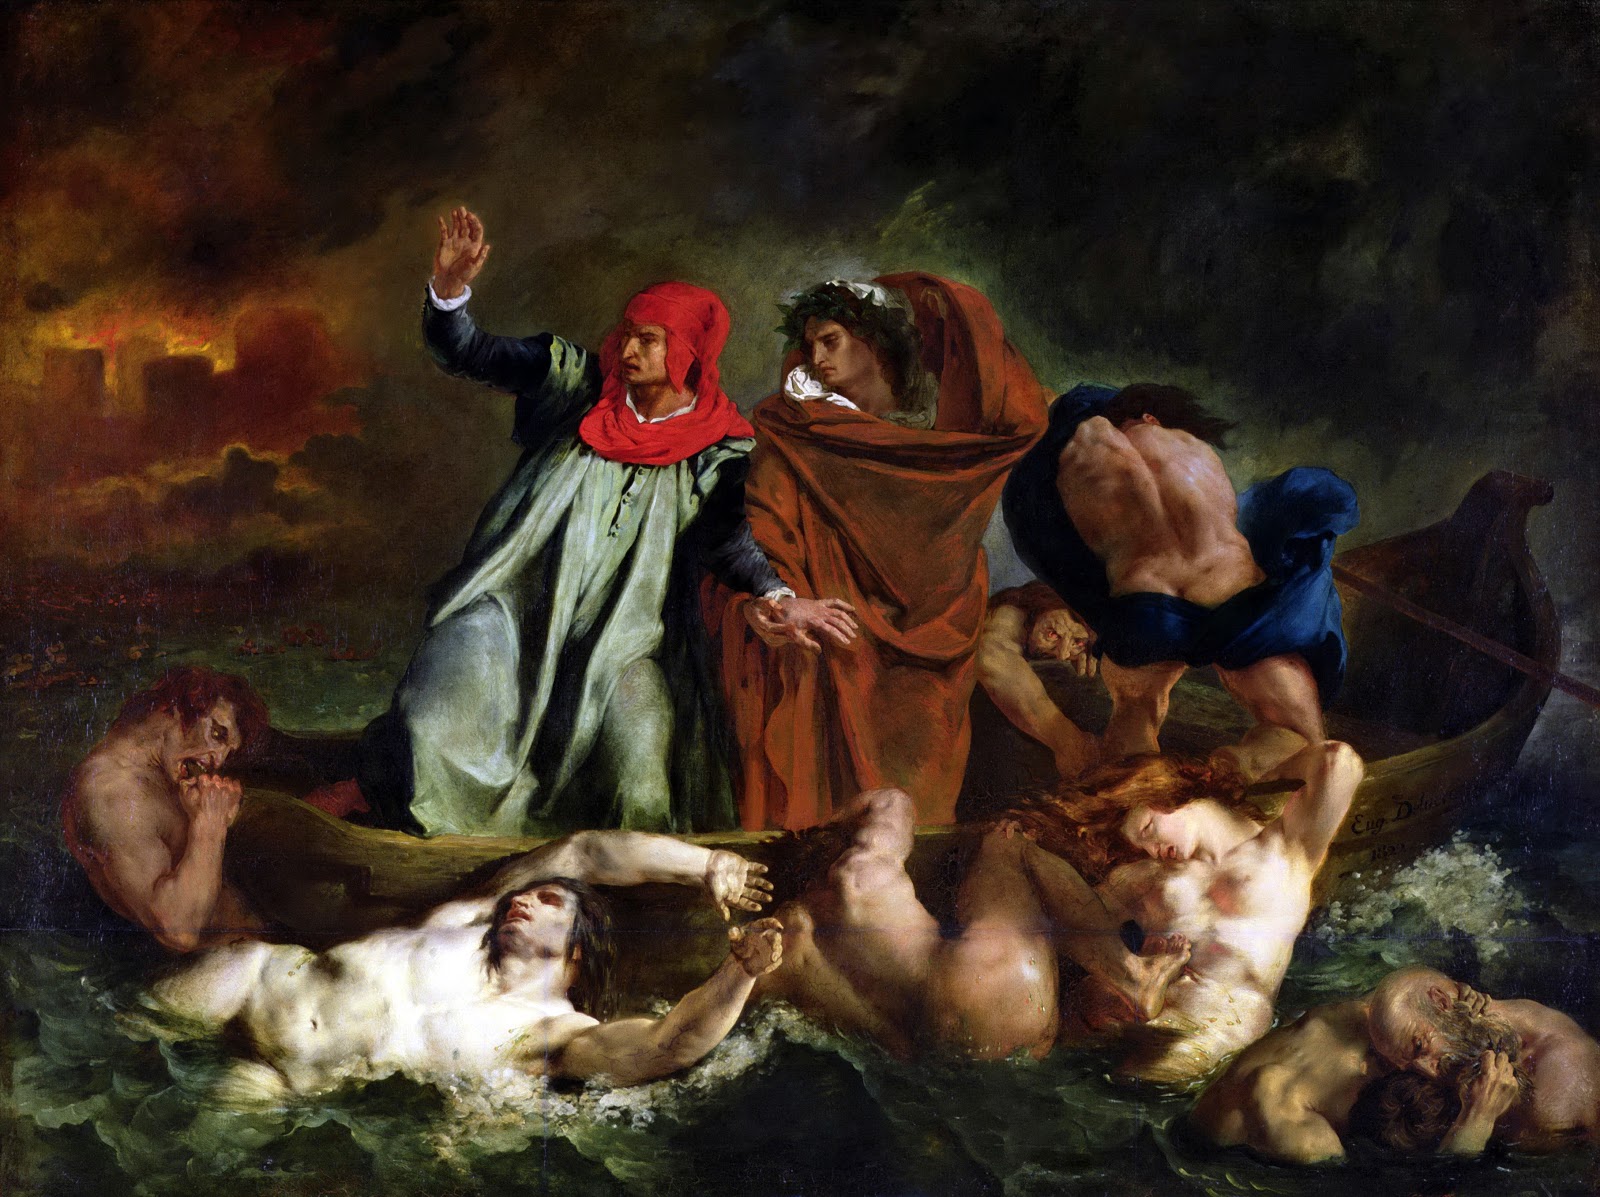 Eugene+Delacroix-1798-1863 (208).jpg